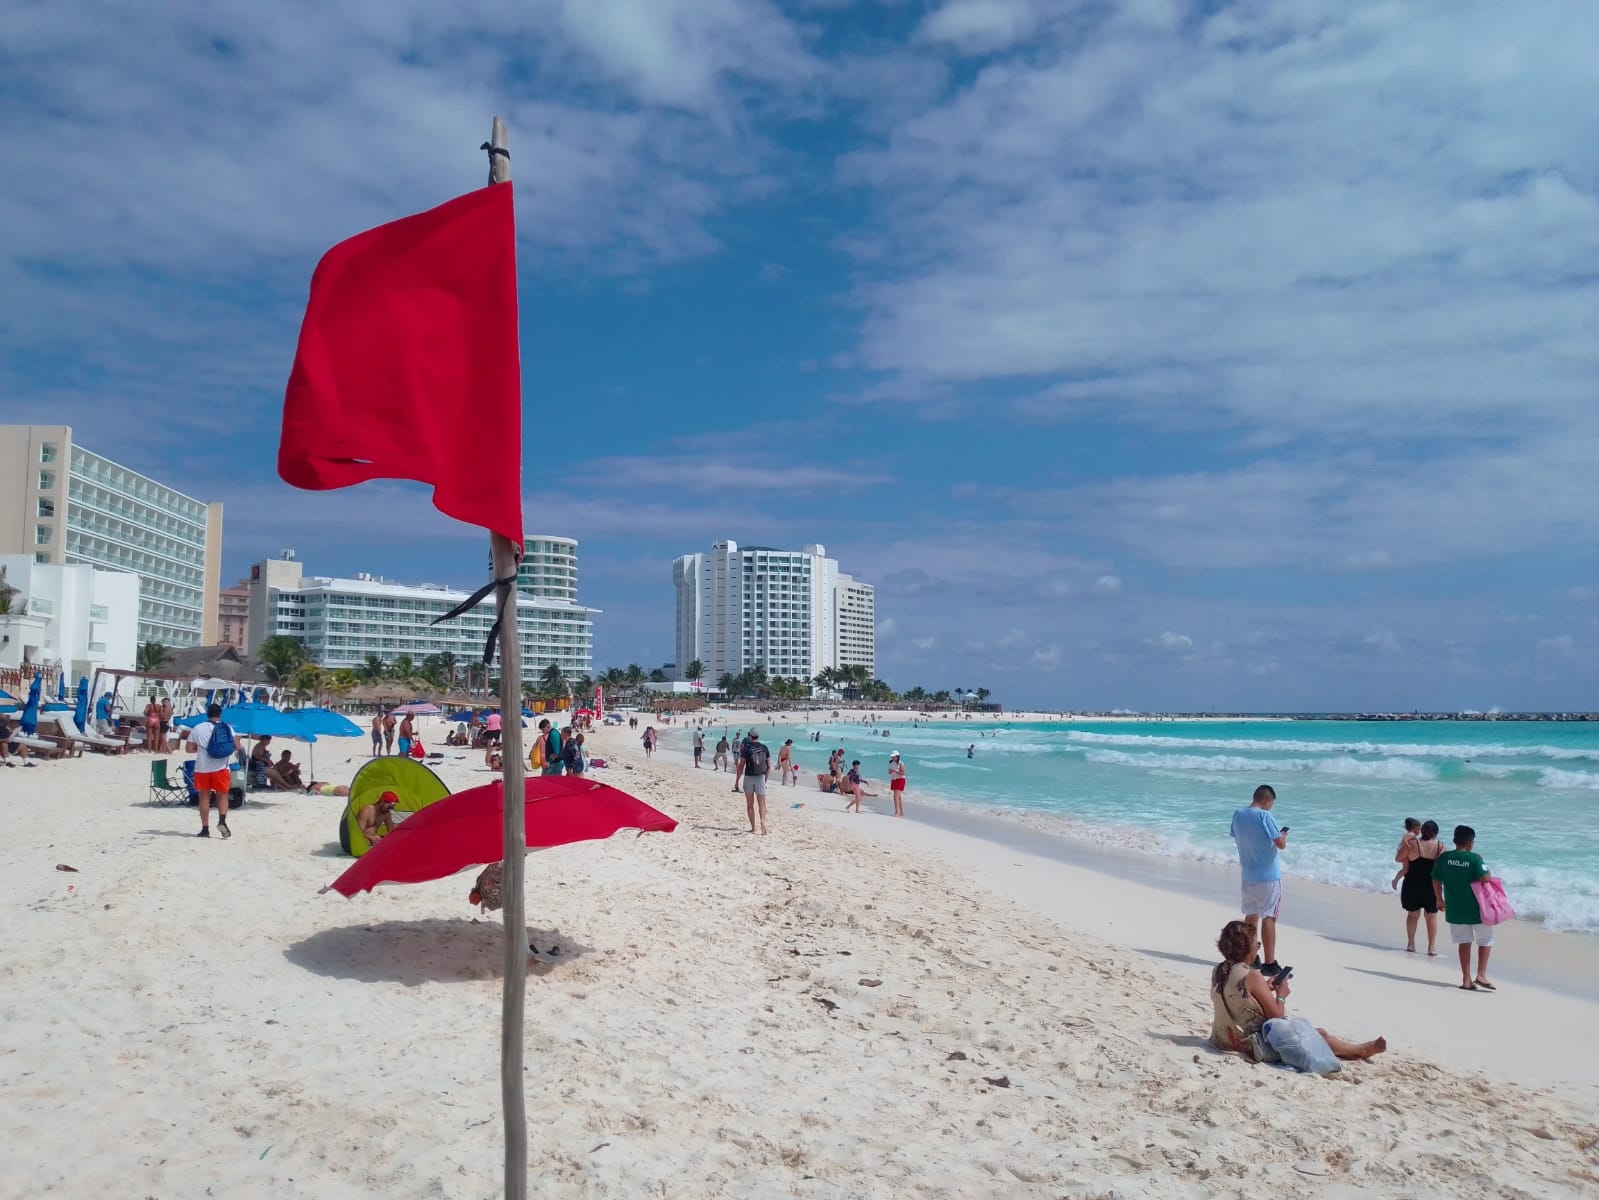 Se registra poca afluencia en Playa Gaviotas de Cancún: EN VIVO